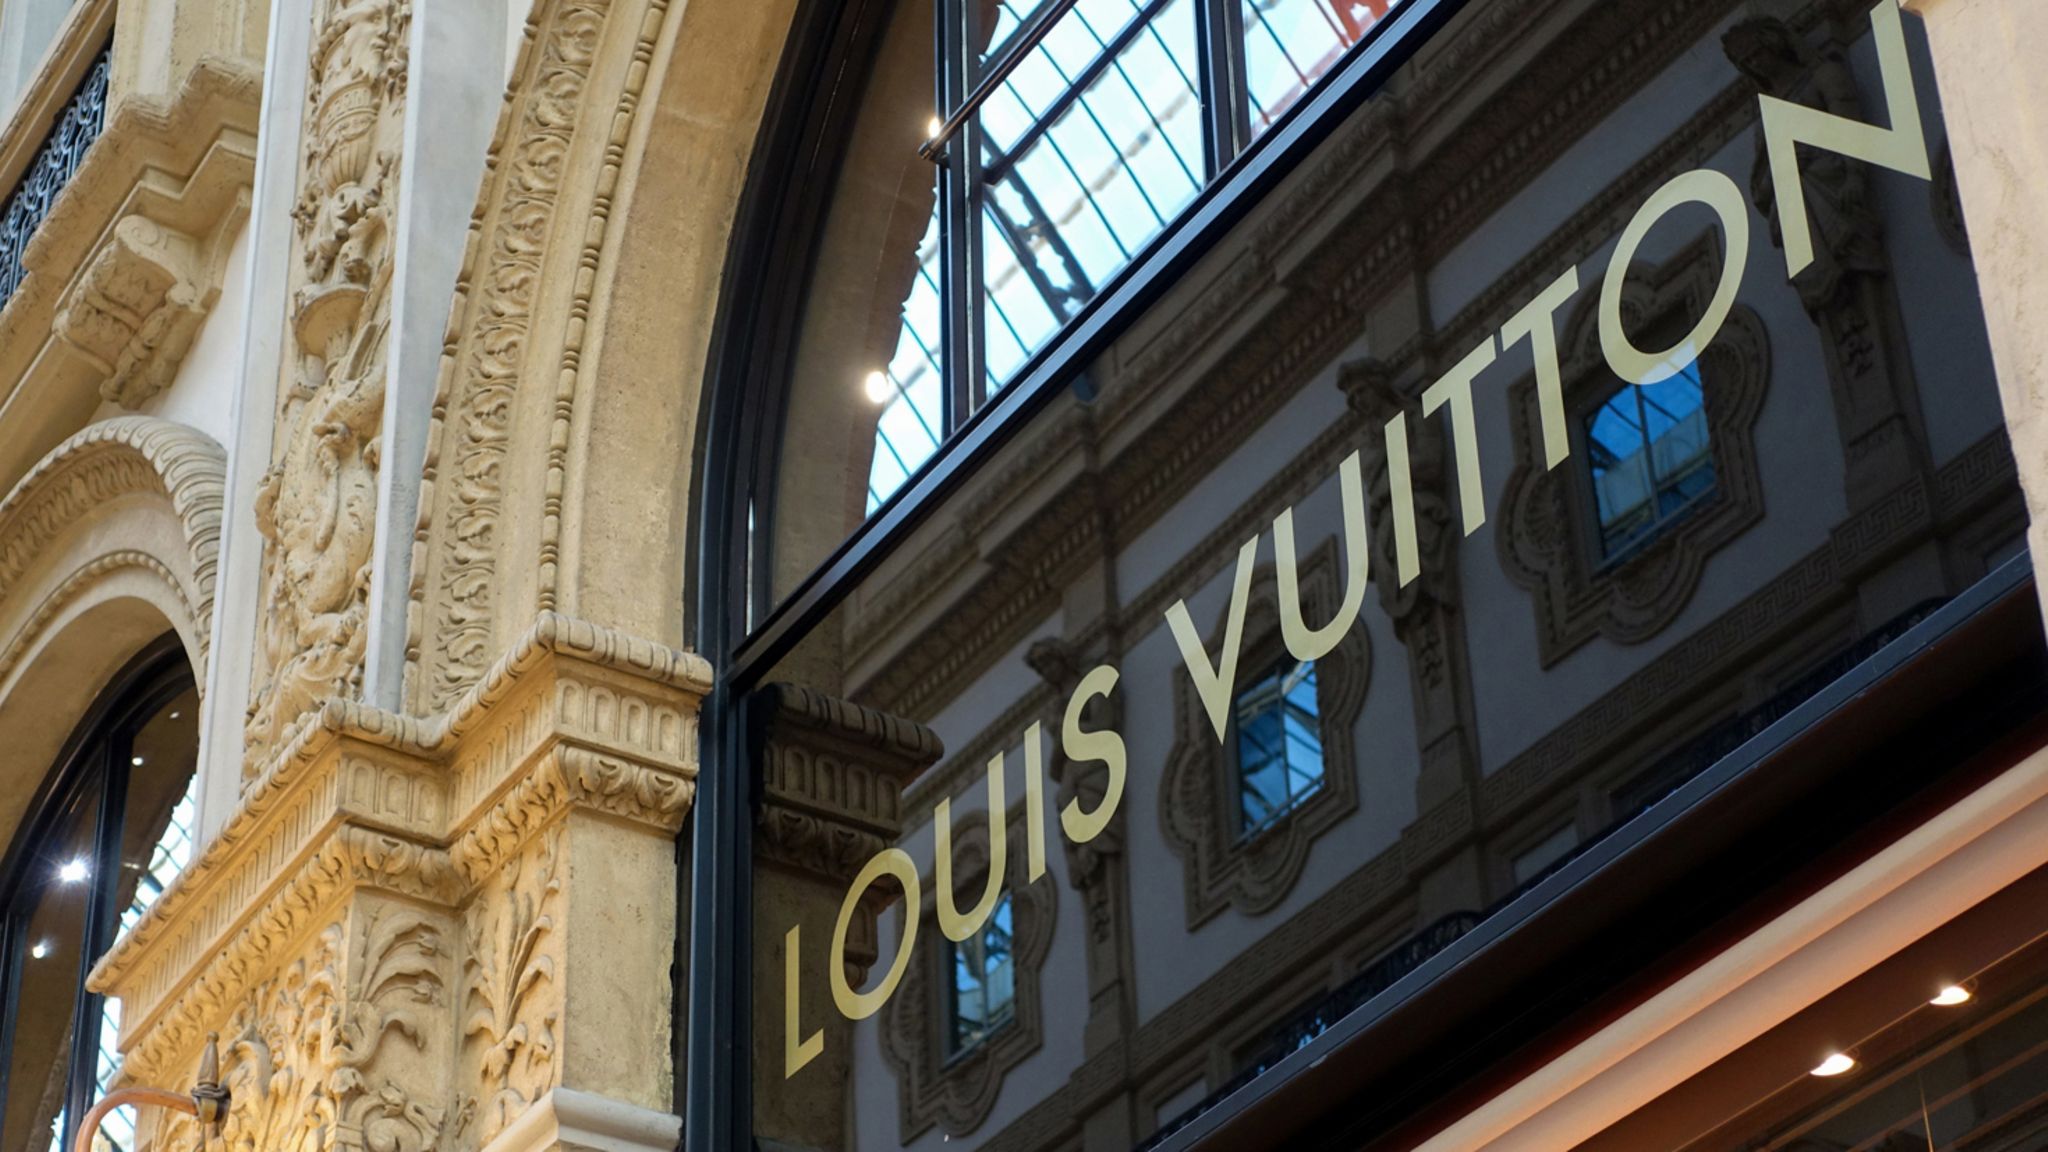 Louis Vuitton: Düfte von der Luxusmarke